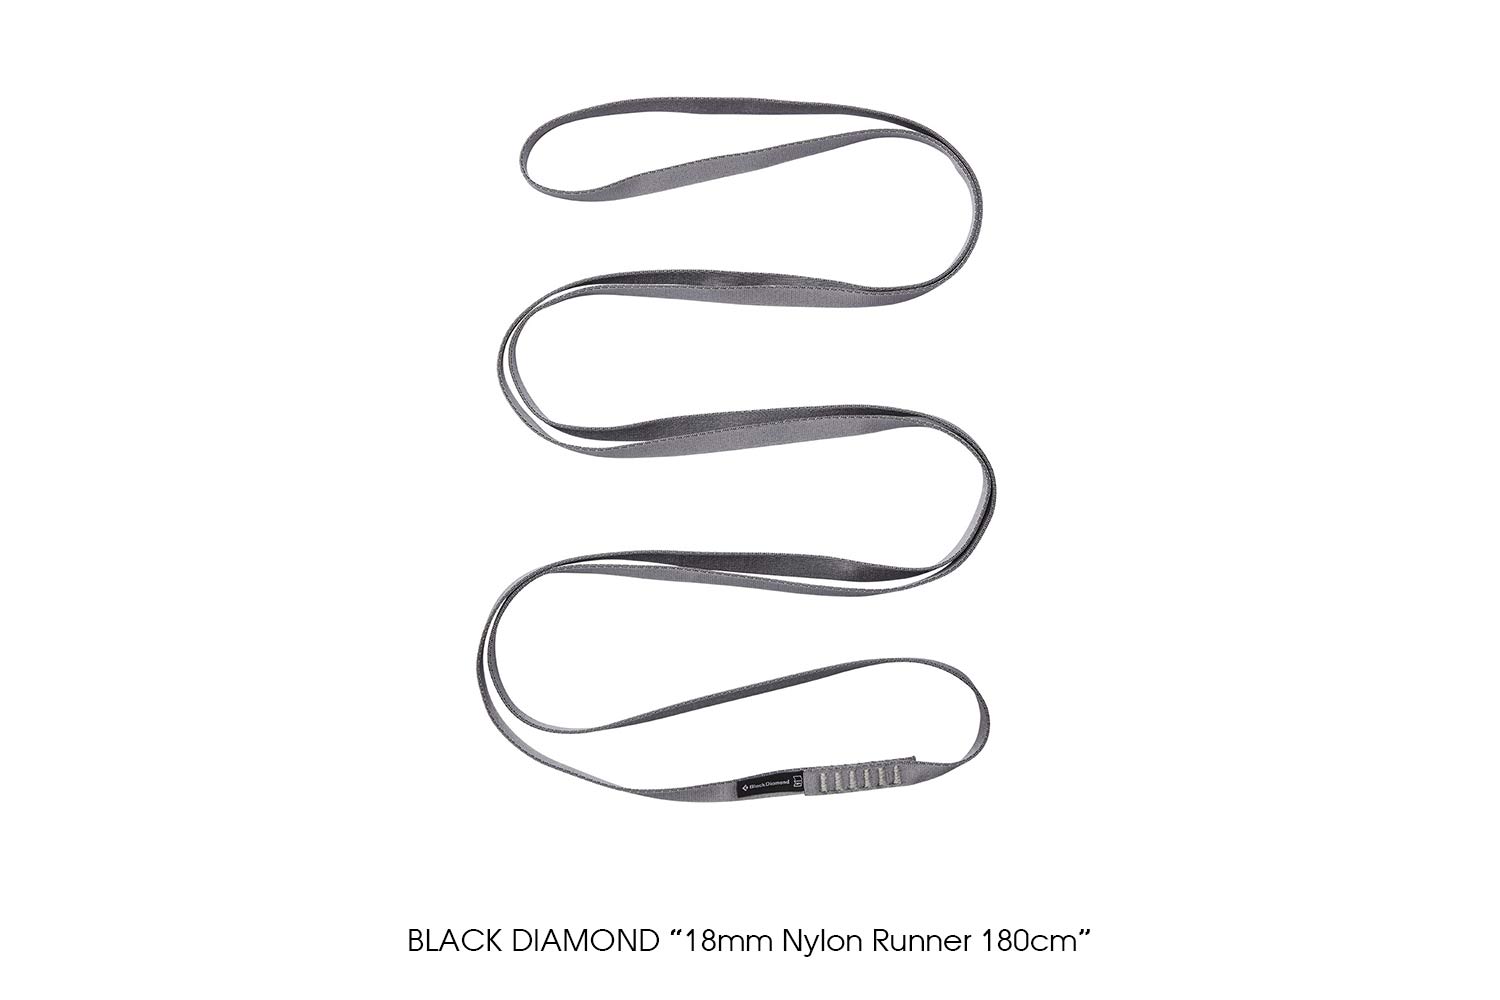 BLACK DIAMOND "18mm Nylon Runner 180cm"